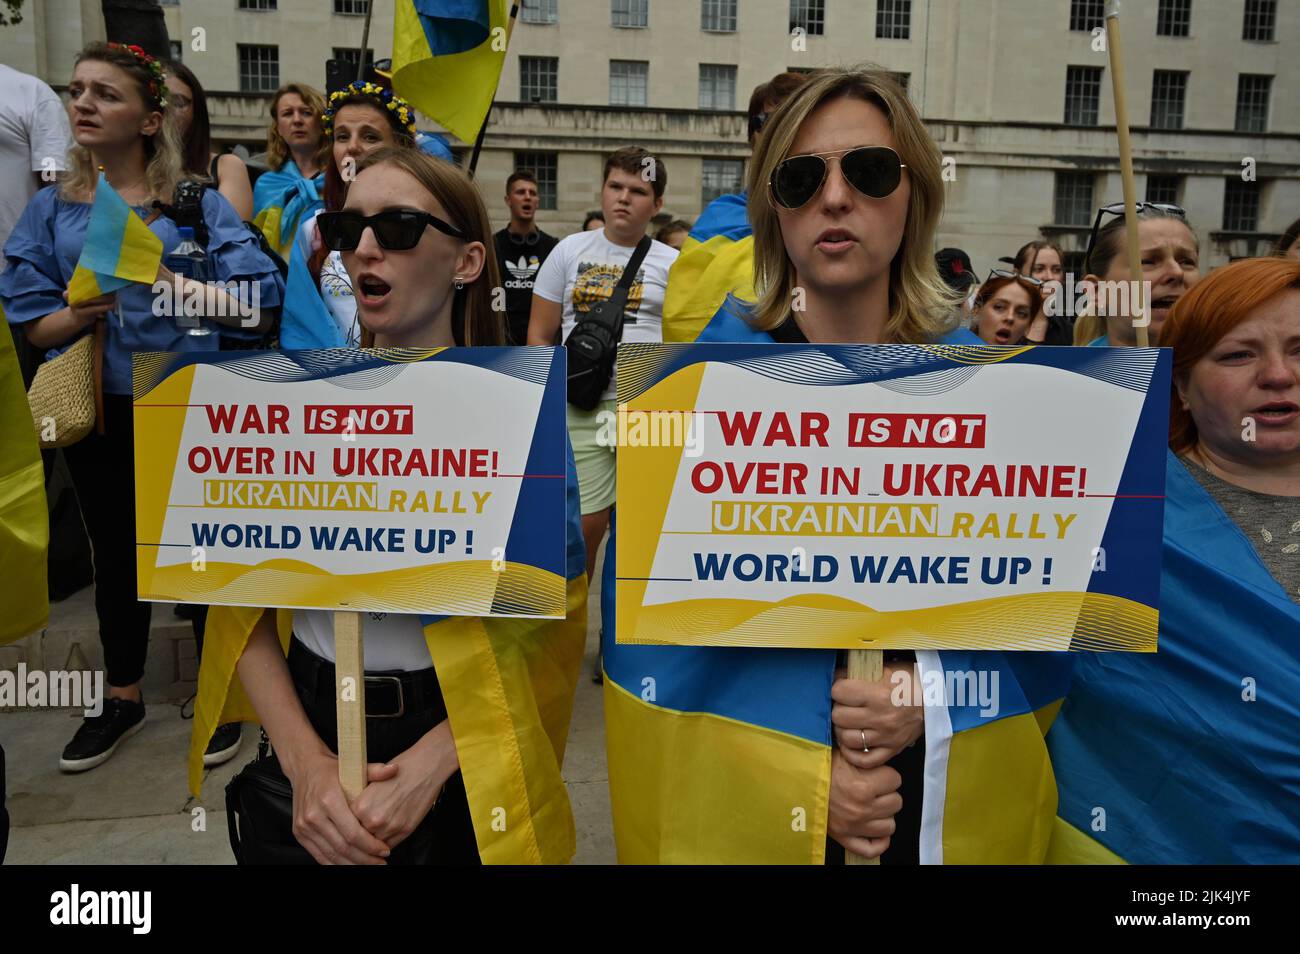 Downing Street, Londra, Regno Unito. 30 luglio 2022. I manifestanti hanno un cartello di protesta fuori Downing Street. La guerra in Ucraina è stata estremamente violenta e il portavoce ha accusato i soldati russi di aver commesso atrocità in Ucraina. Non ci sarà un vincitore nella guerra. L'Ucraina è una nazione orgogliosa Ucraina. Sappiamo che la NATO ci ha mentito. Dacci le armi che hai promesso. Non vogliamo che tu combatti per noi. Possiamo combattere contro i russi da soli. Mi rattrista vedere le lacrime agli occhi delle ragazze e delle donne ucraine. Credit: Vedi li/Picture Capital/Alamy Live News Foto Stock